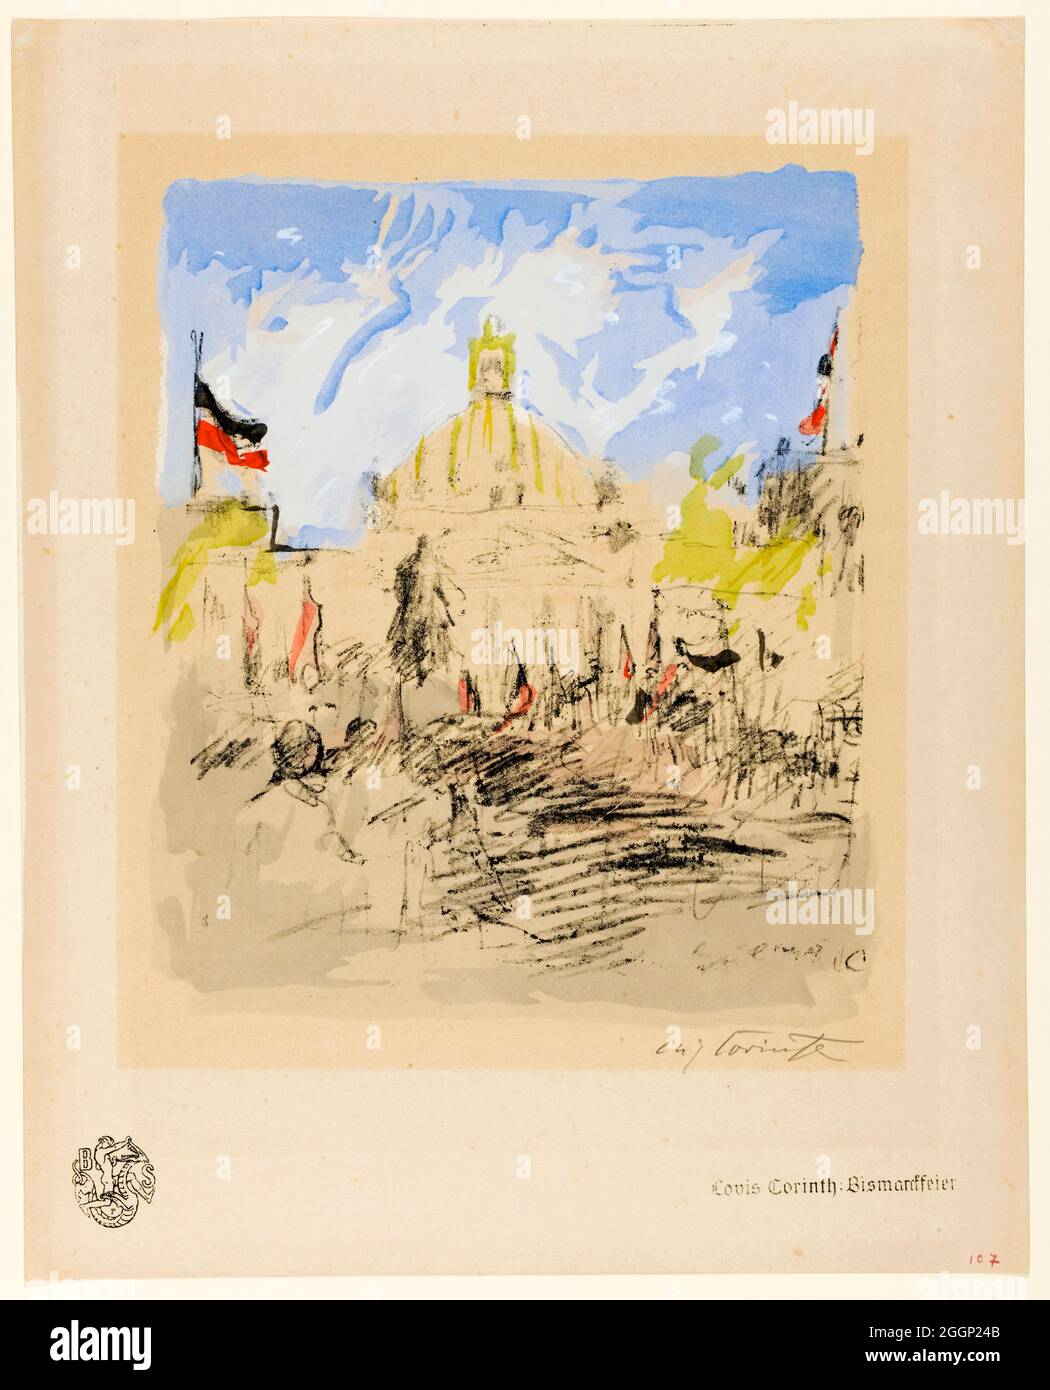 Lovis Corinth, celebración de Bismarck el 1st 1915 de abril, impresión litográfica, 1915 Foto de stock